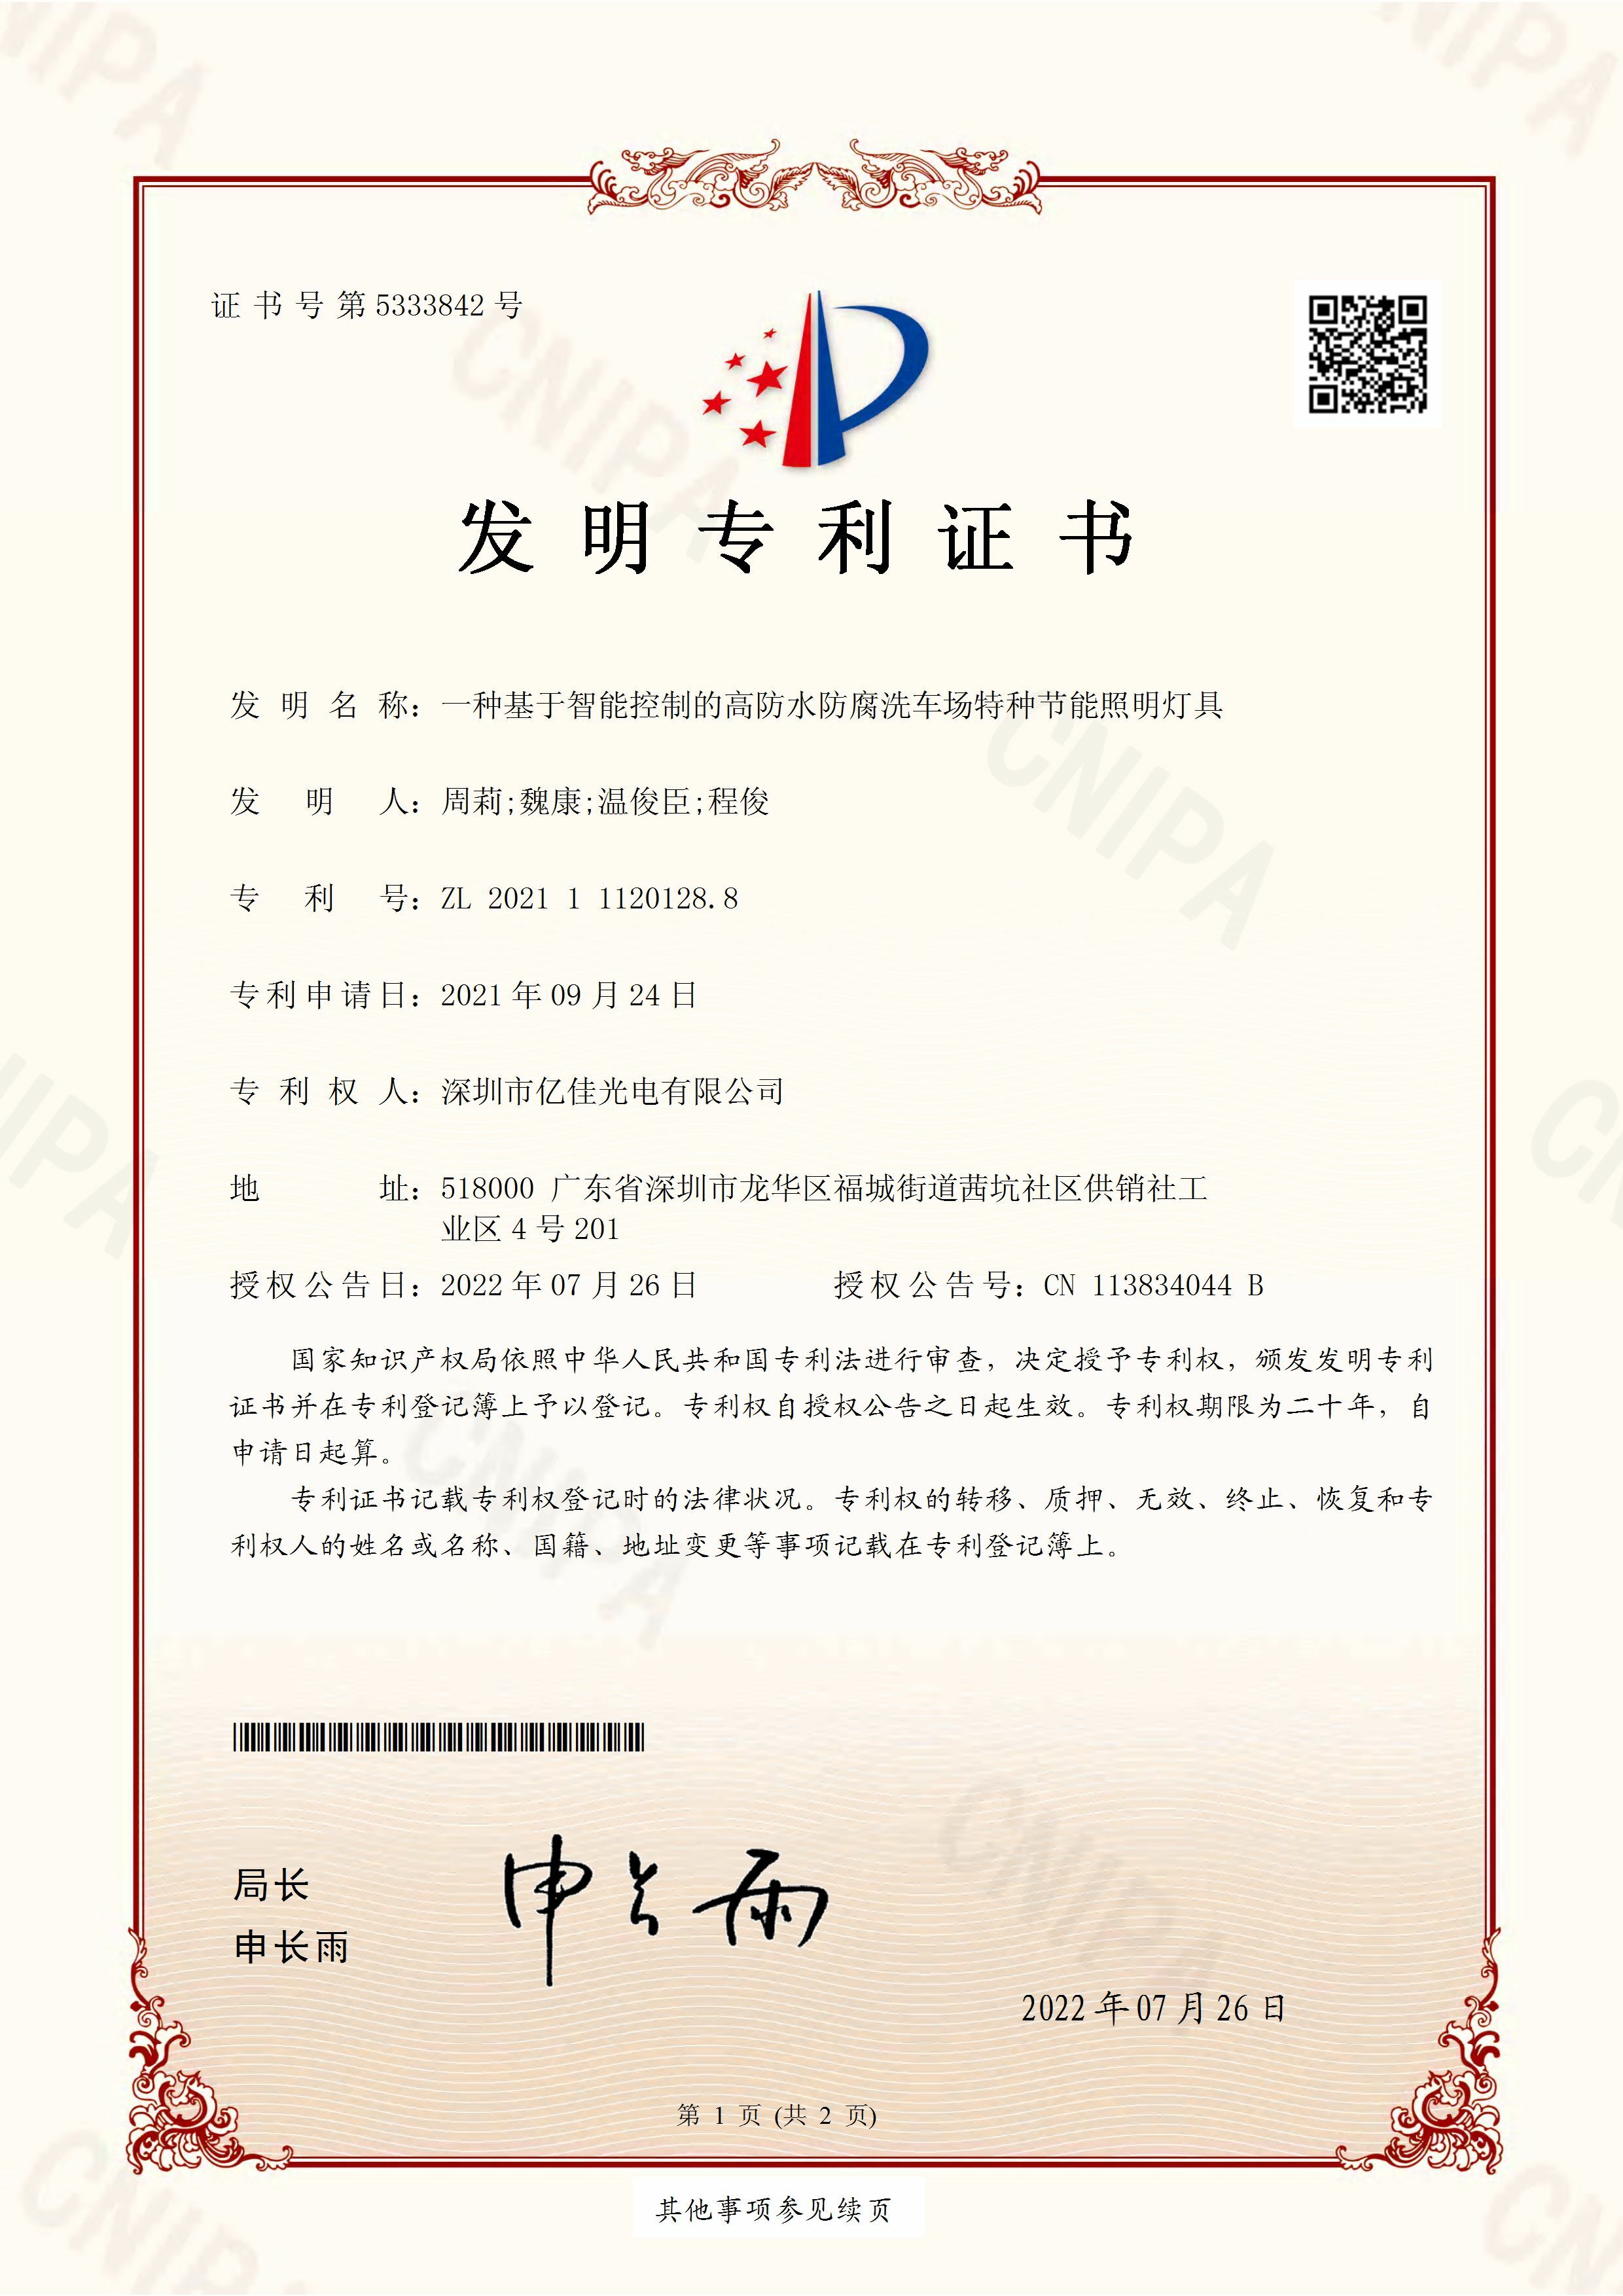 深圳市大宝娱乐光电有限公司洗车场节能照明灯发明专利申请获得通过